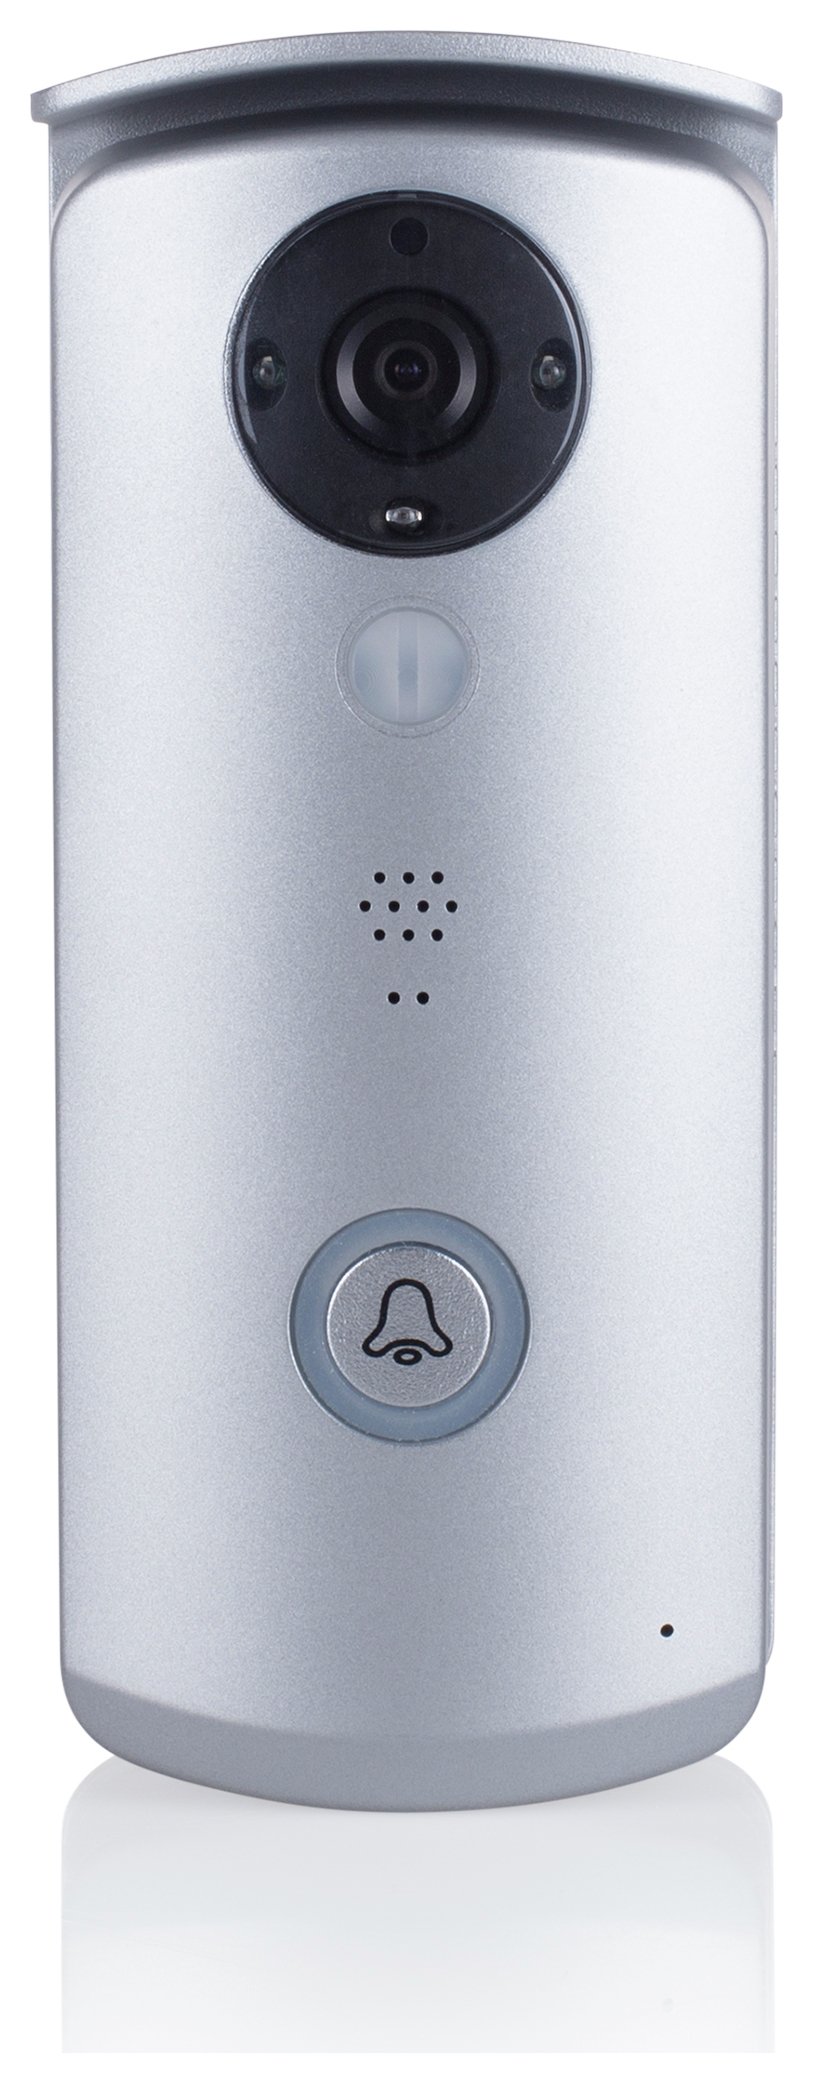 Smartwares Wi-Fi Video Doorbell